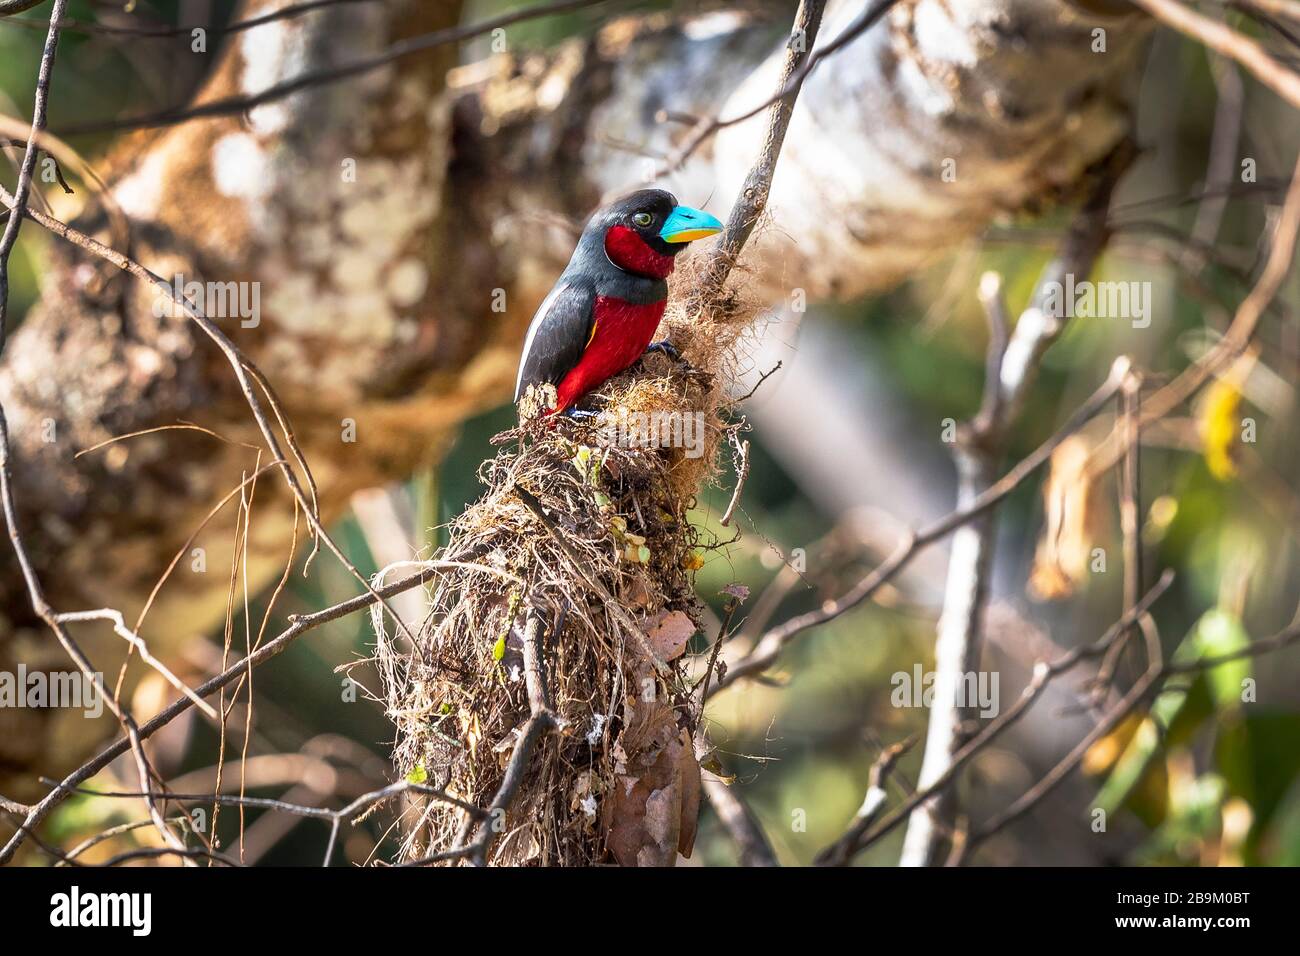 Becco nero e rosso, cymbirhnchus macrorhynchos, un uccello multicolore nelle foreste umide del Borneo, Asia Foto Stock